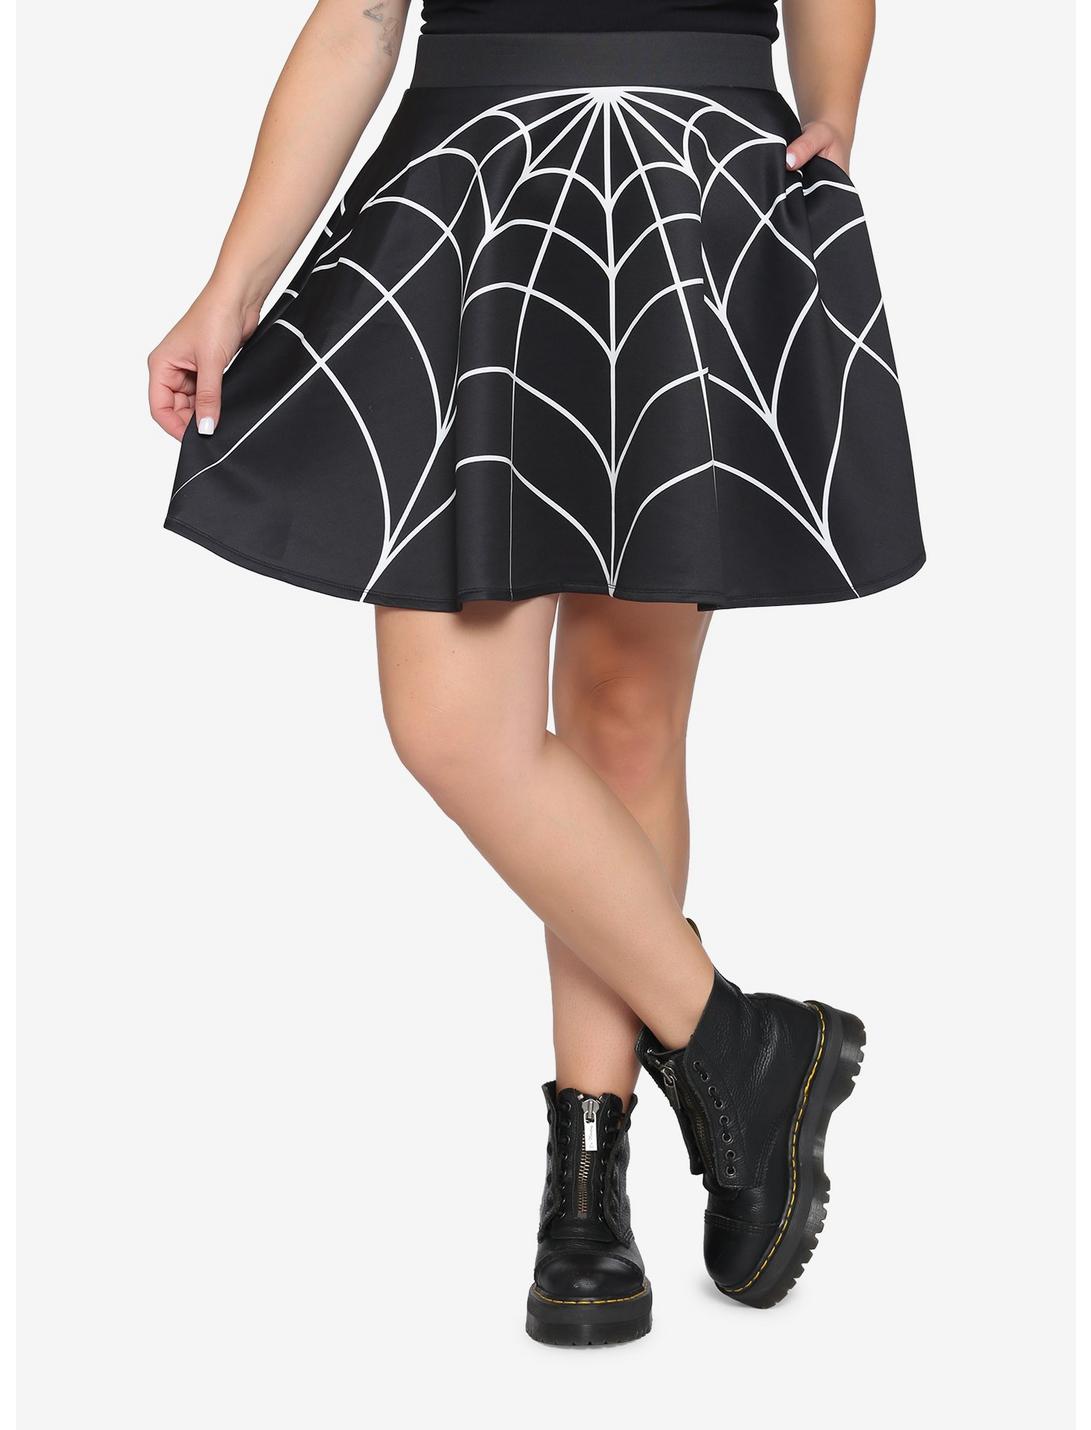 Spiderweb Skirt Plus Size, BLACK, hi-res